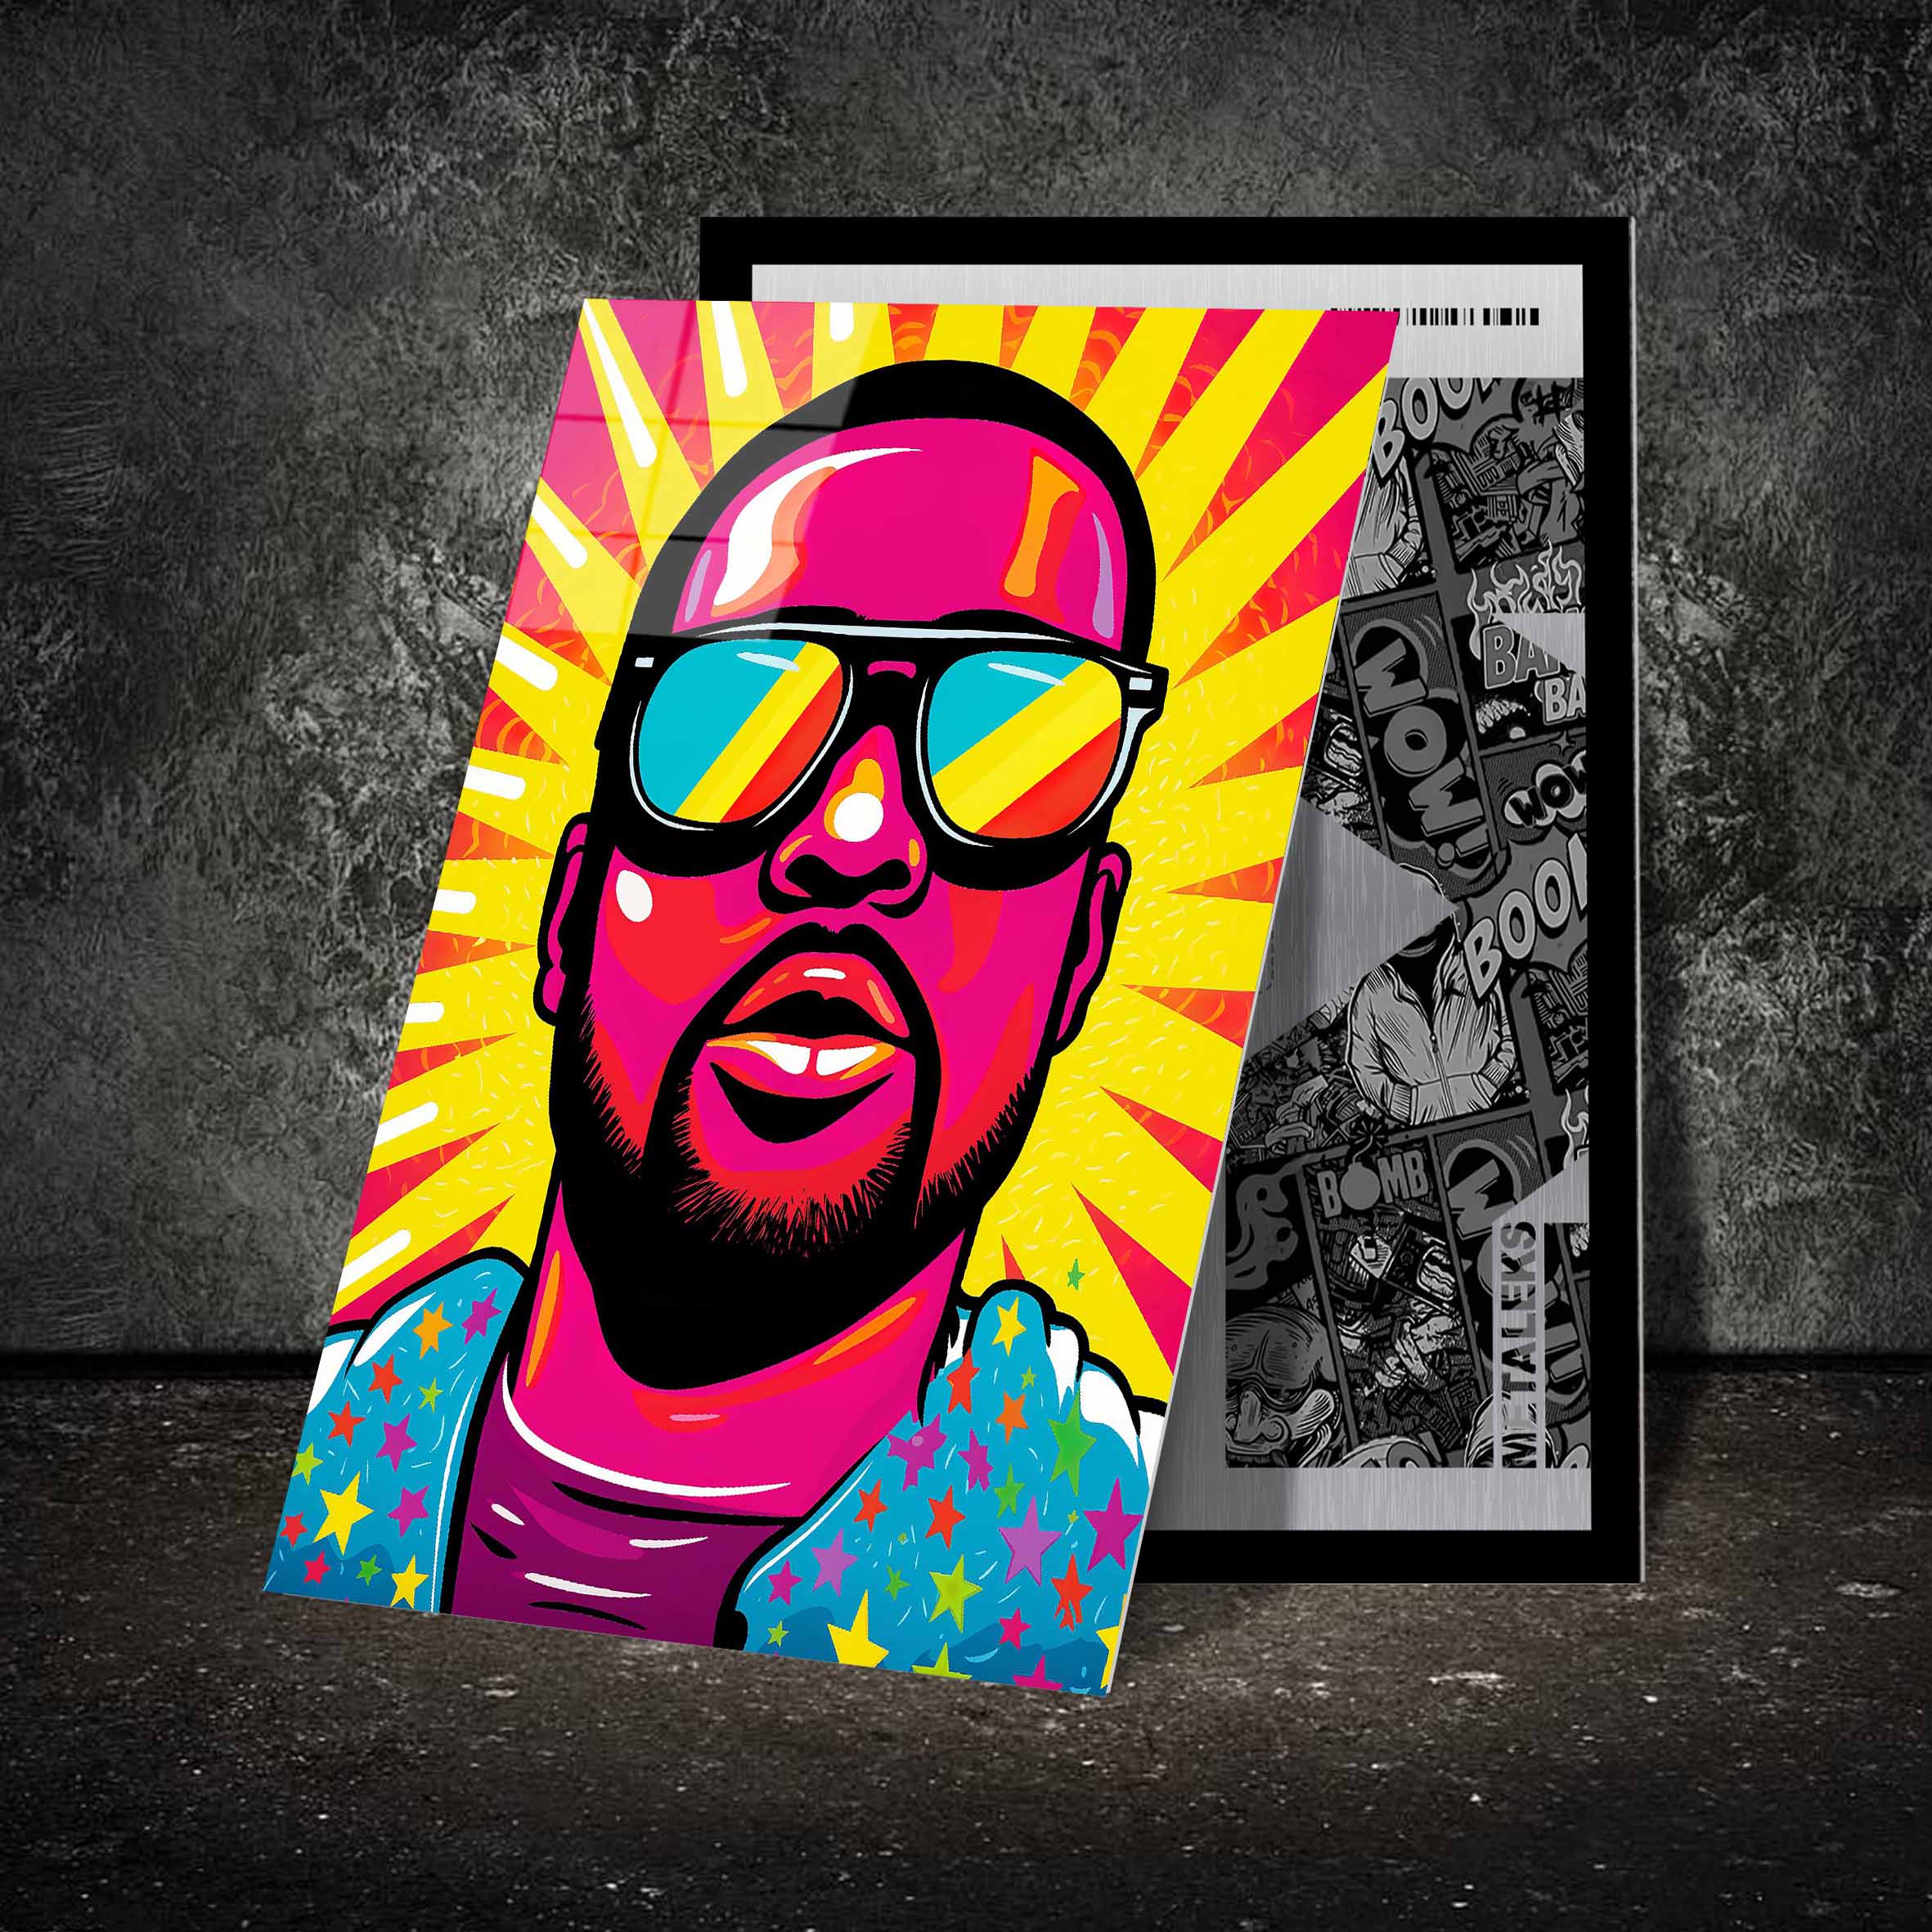 Ye Kanye West-designed by @WATON CORET